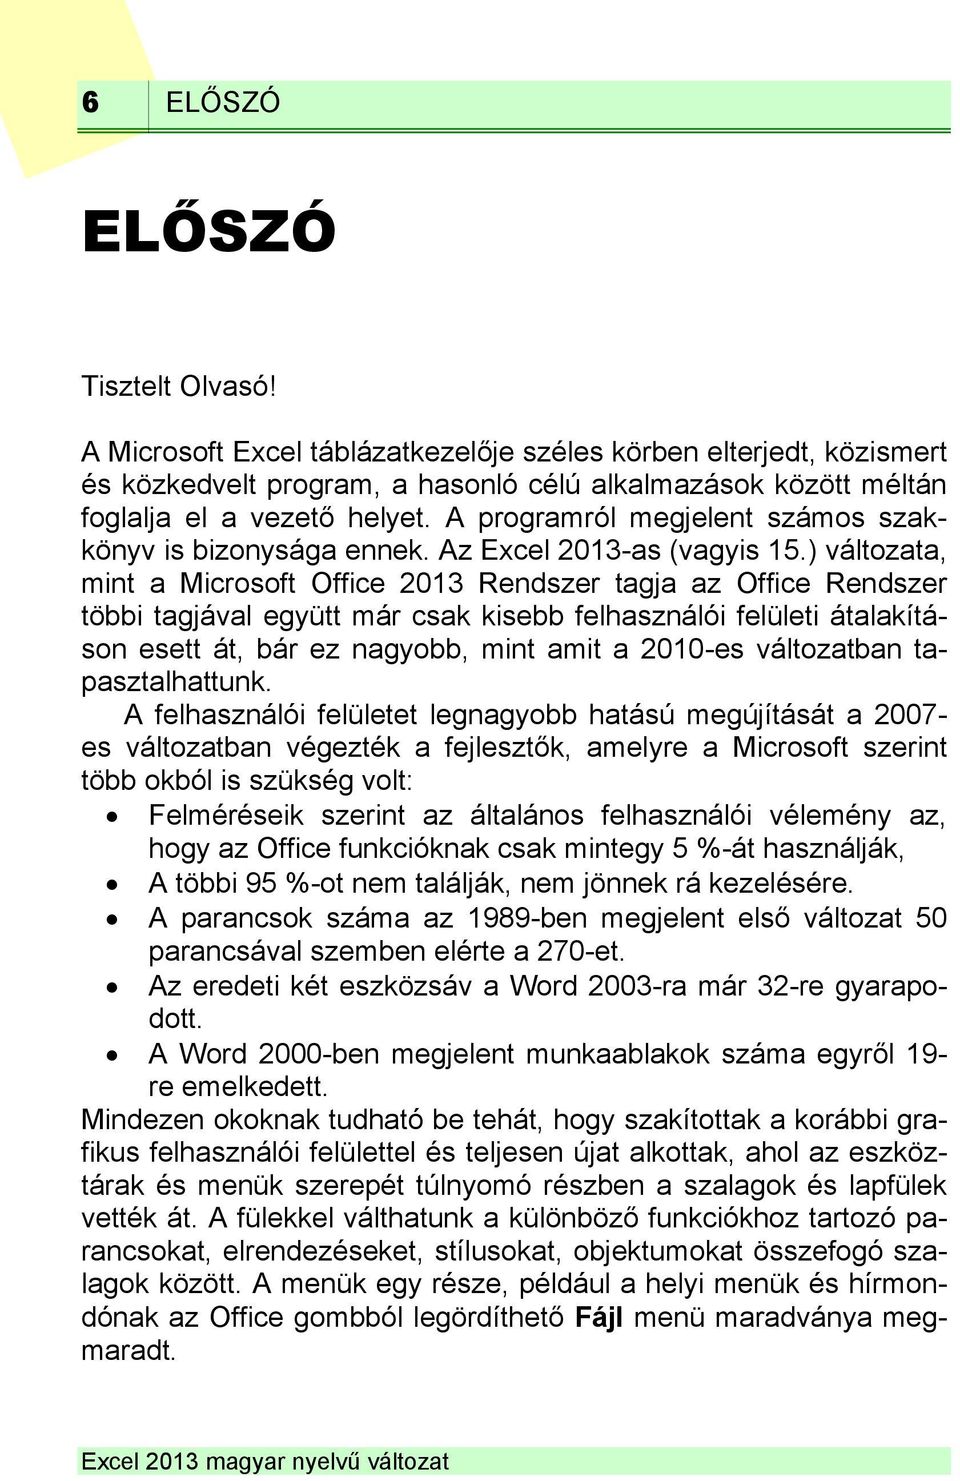 ) változata, mint a Microsoft Office 2013 Rendszer tagja az Office Rendszer többi tagjával együtt már csak kisebb felhasználói felületi átalakításon esett át, bár ez nagyobb, mint amit a 2010-es